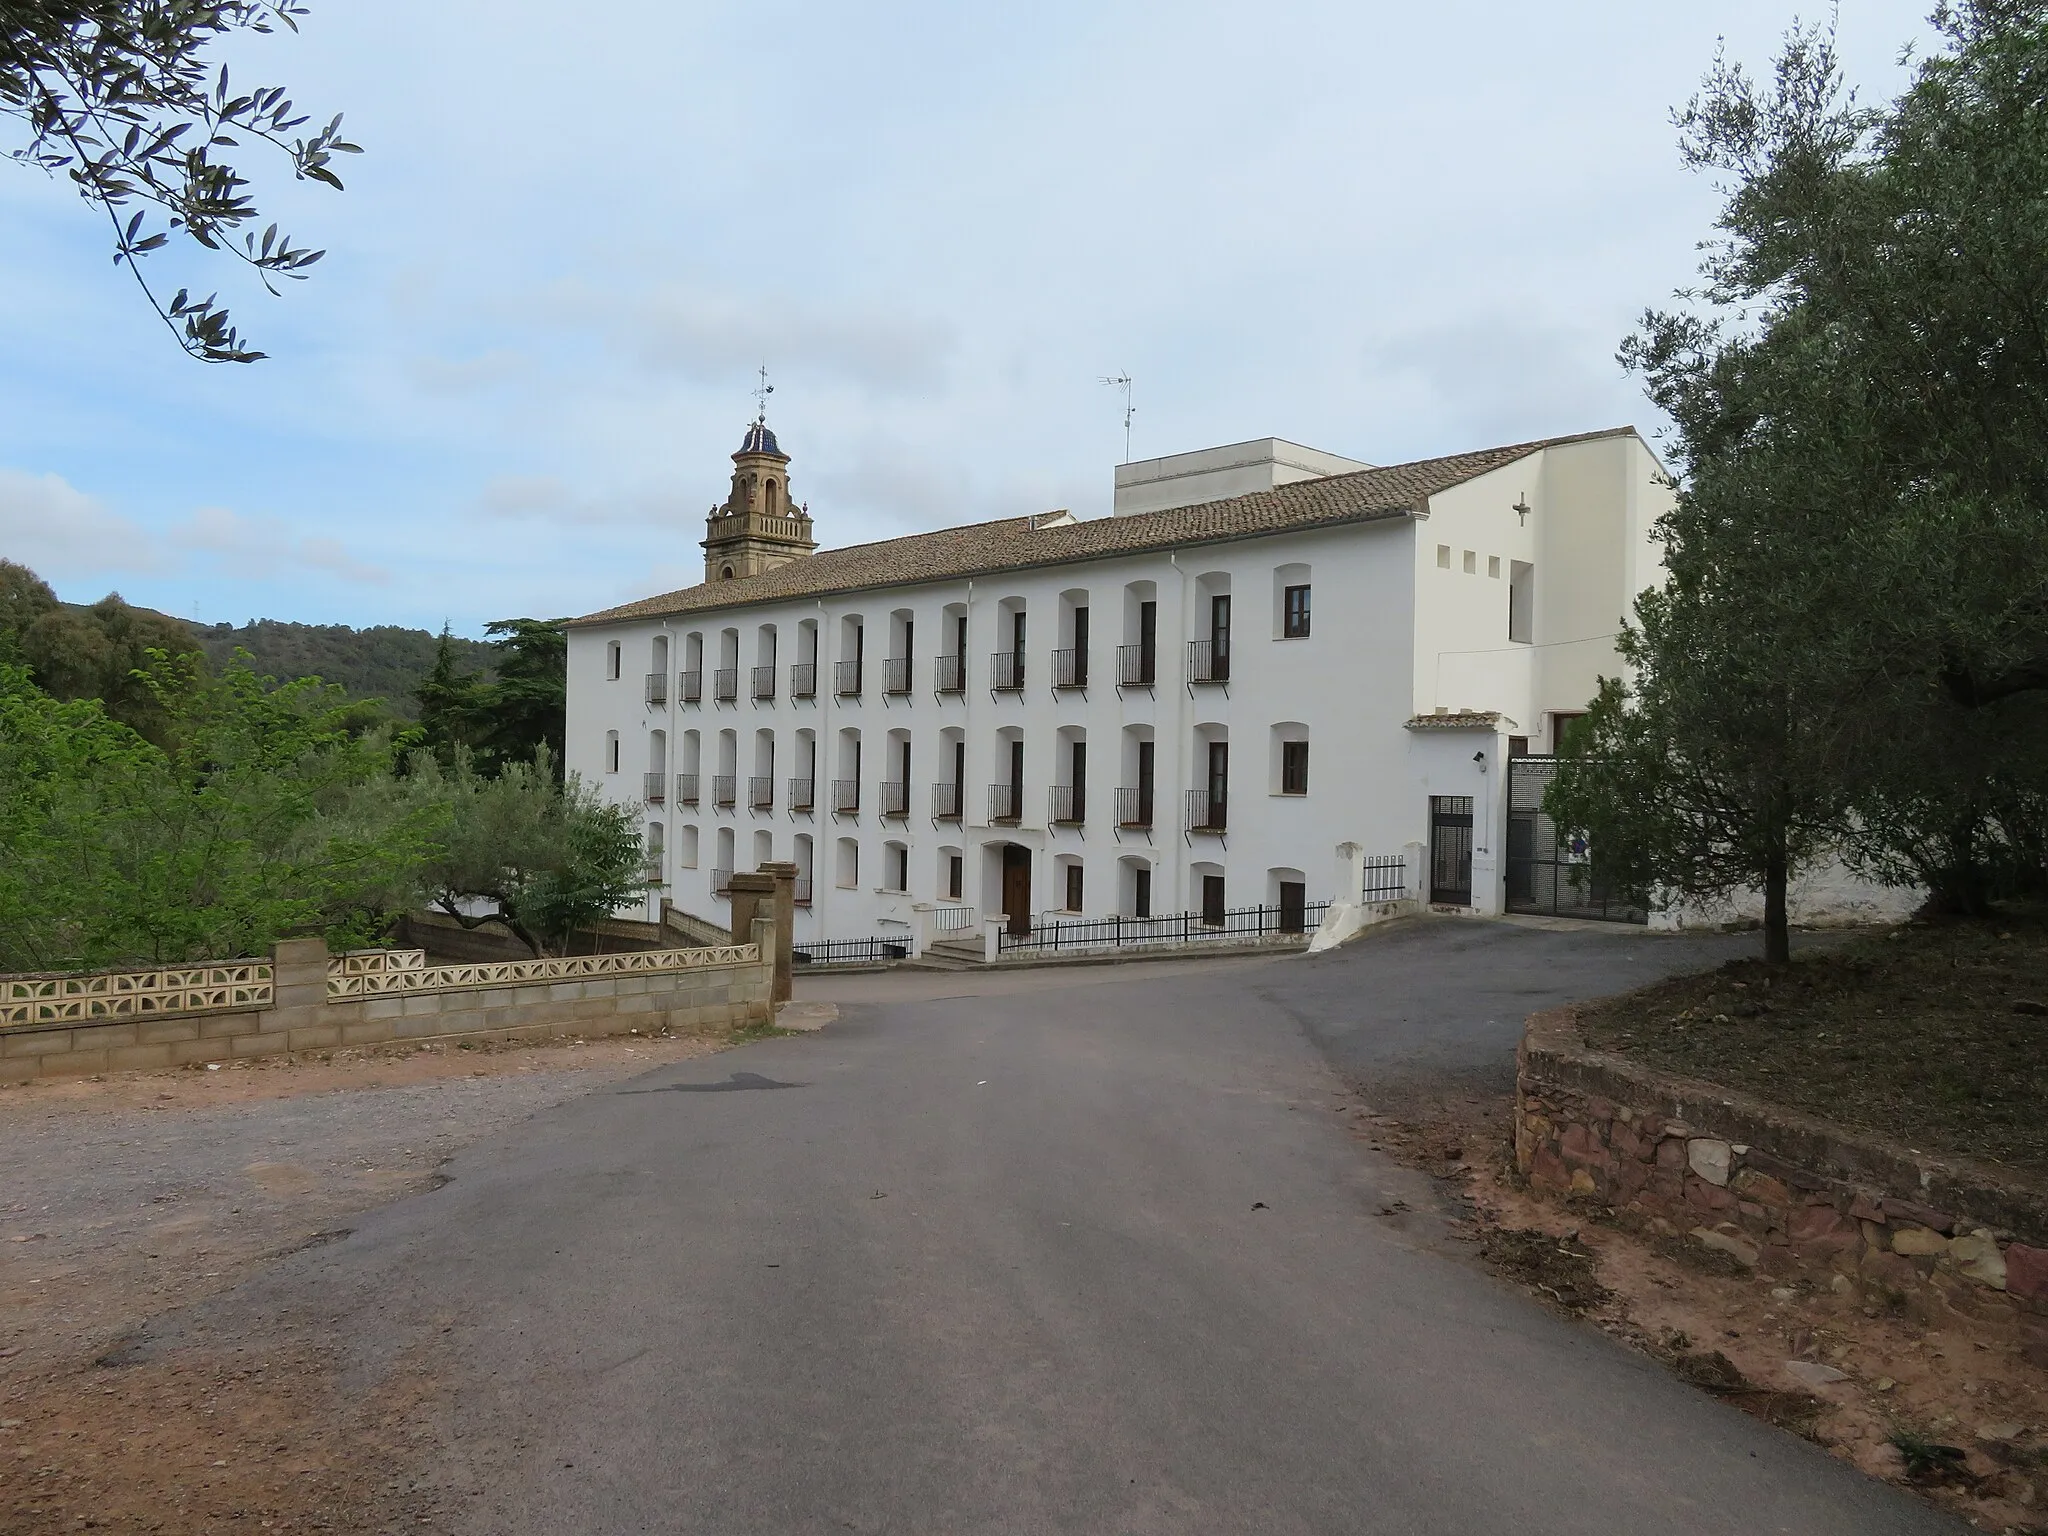 Photo showing: Real Monasterio de Santo Espíritu del Monte